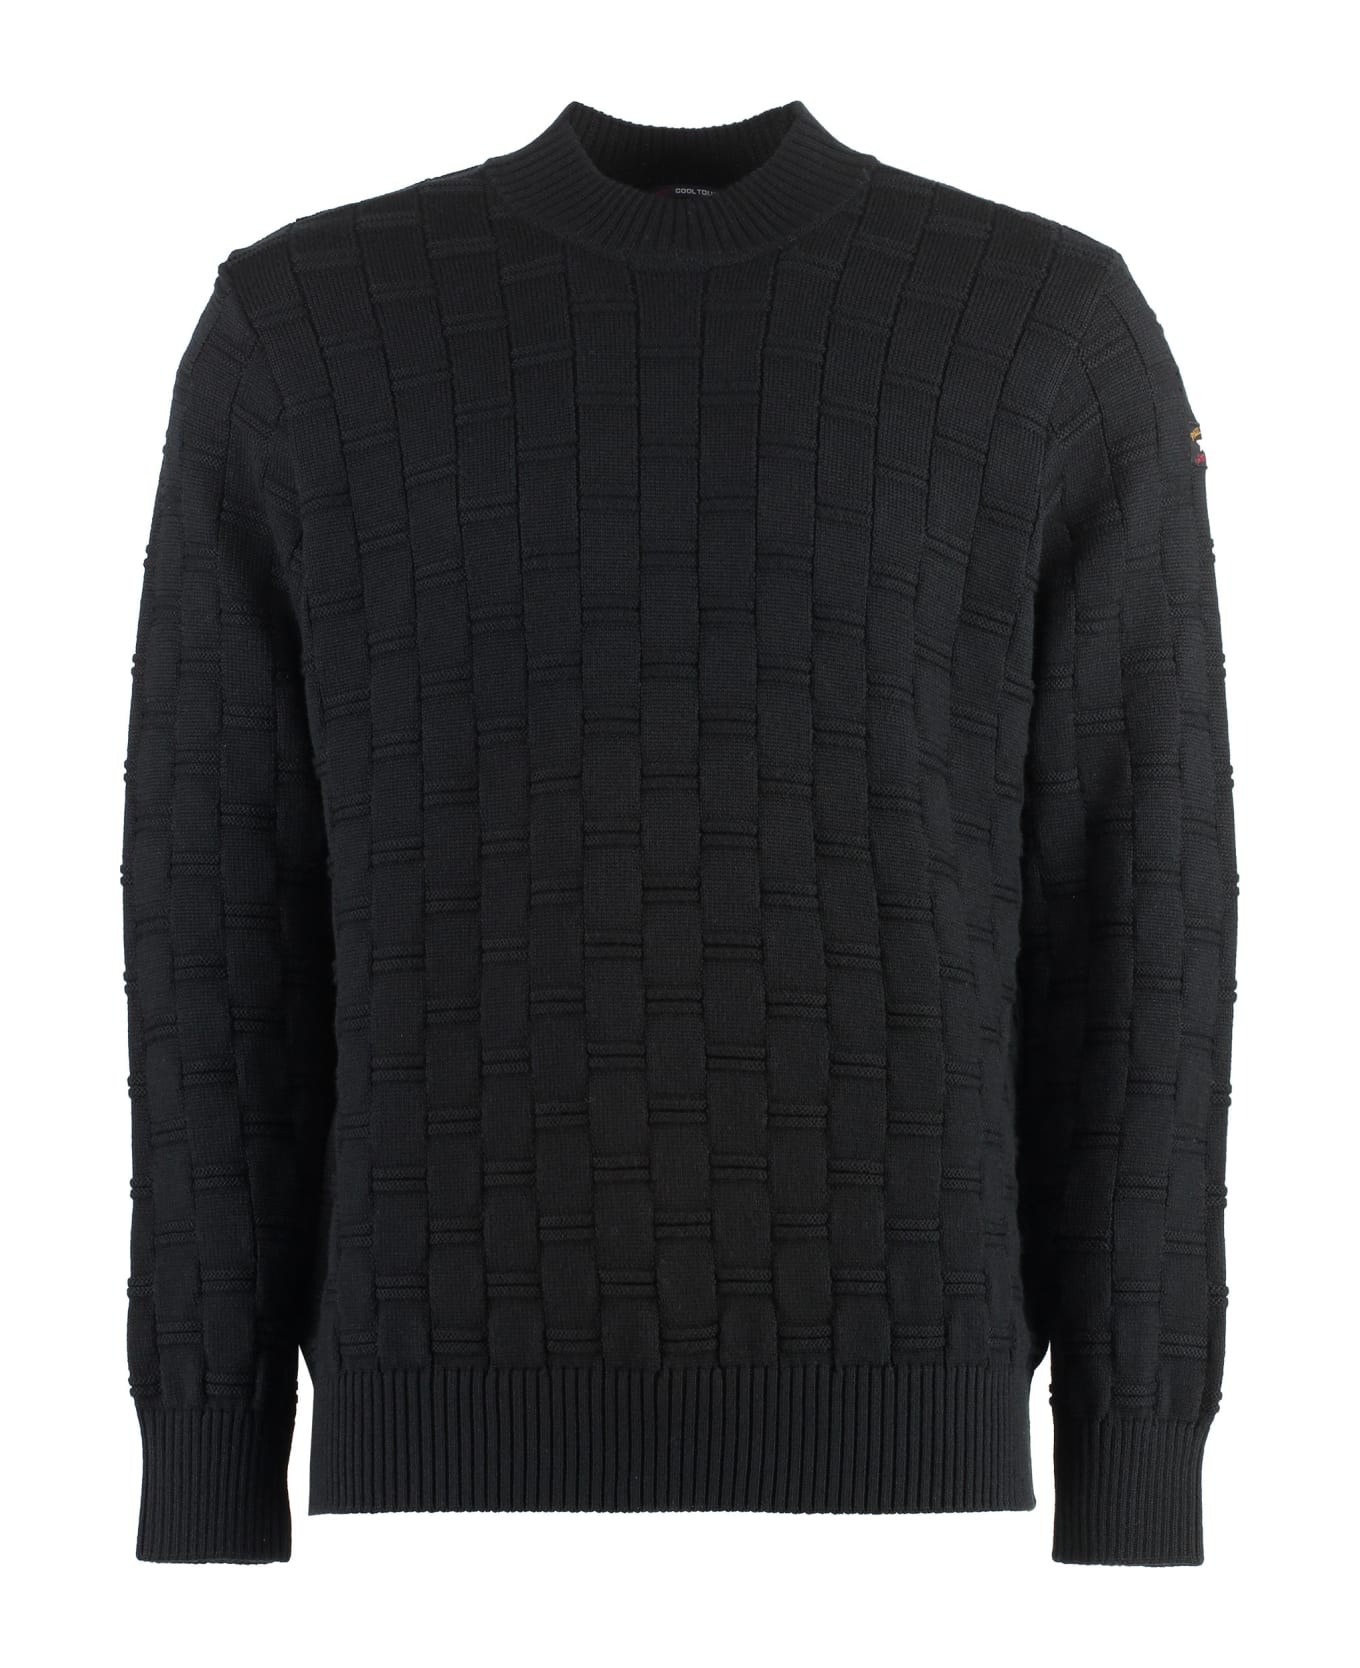 Paul&Shark Virgin Wool Crew-neck Sweater - black ニットウェア